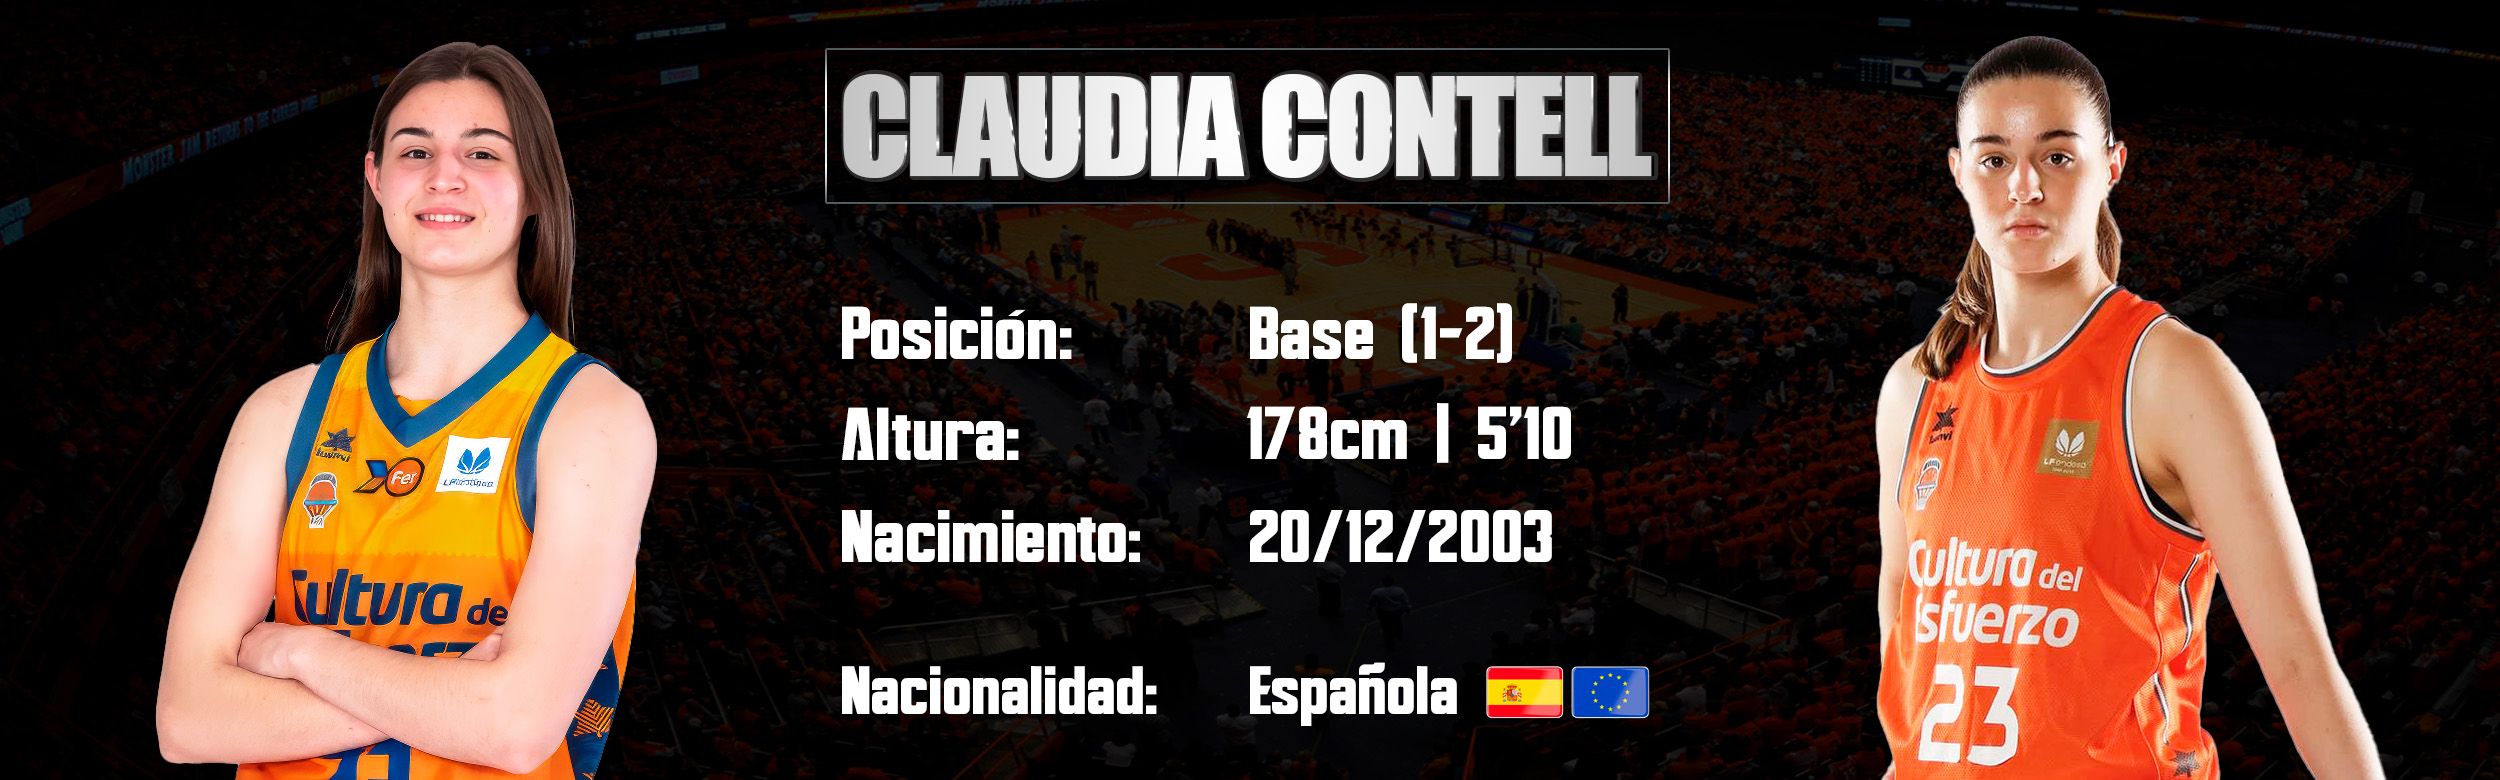 Claudia Contell